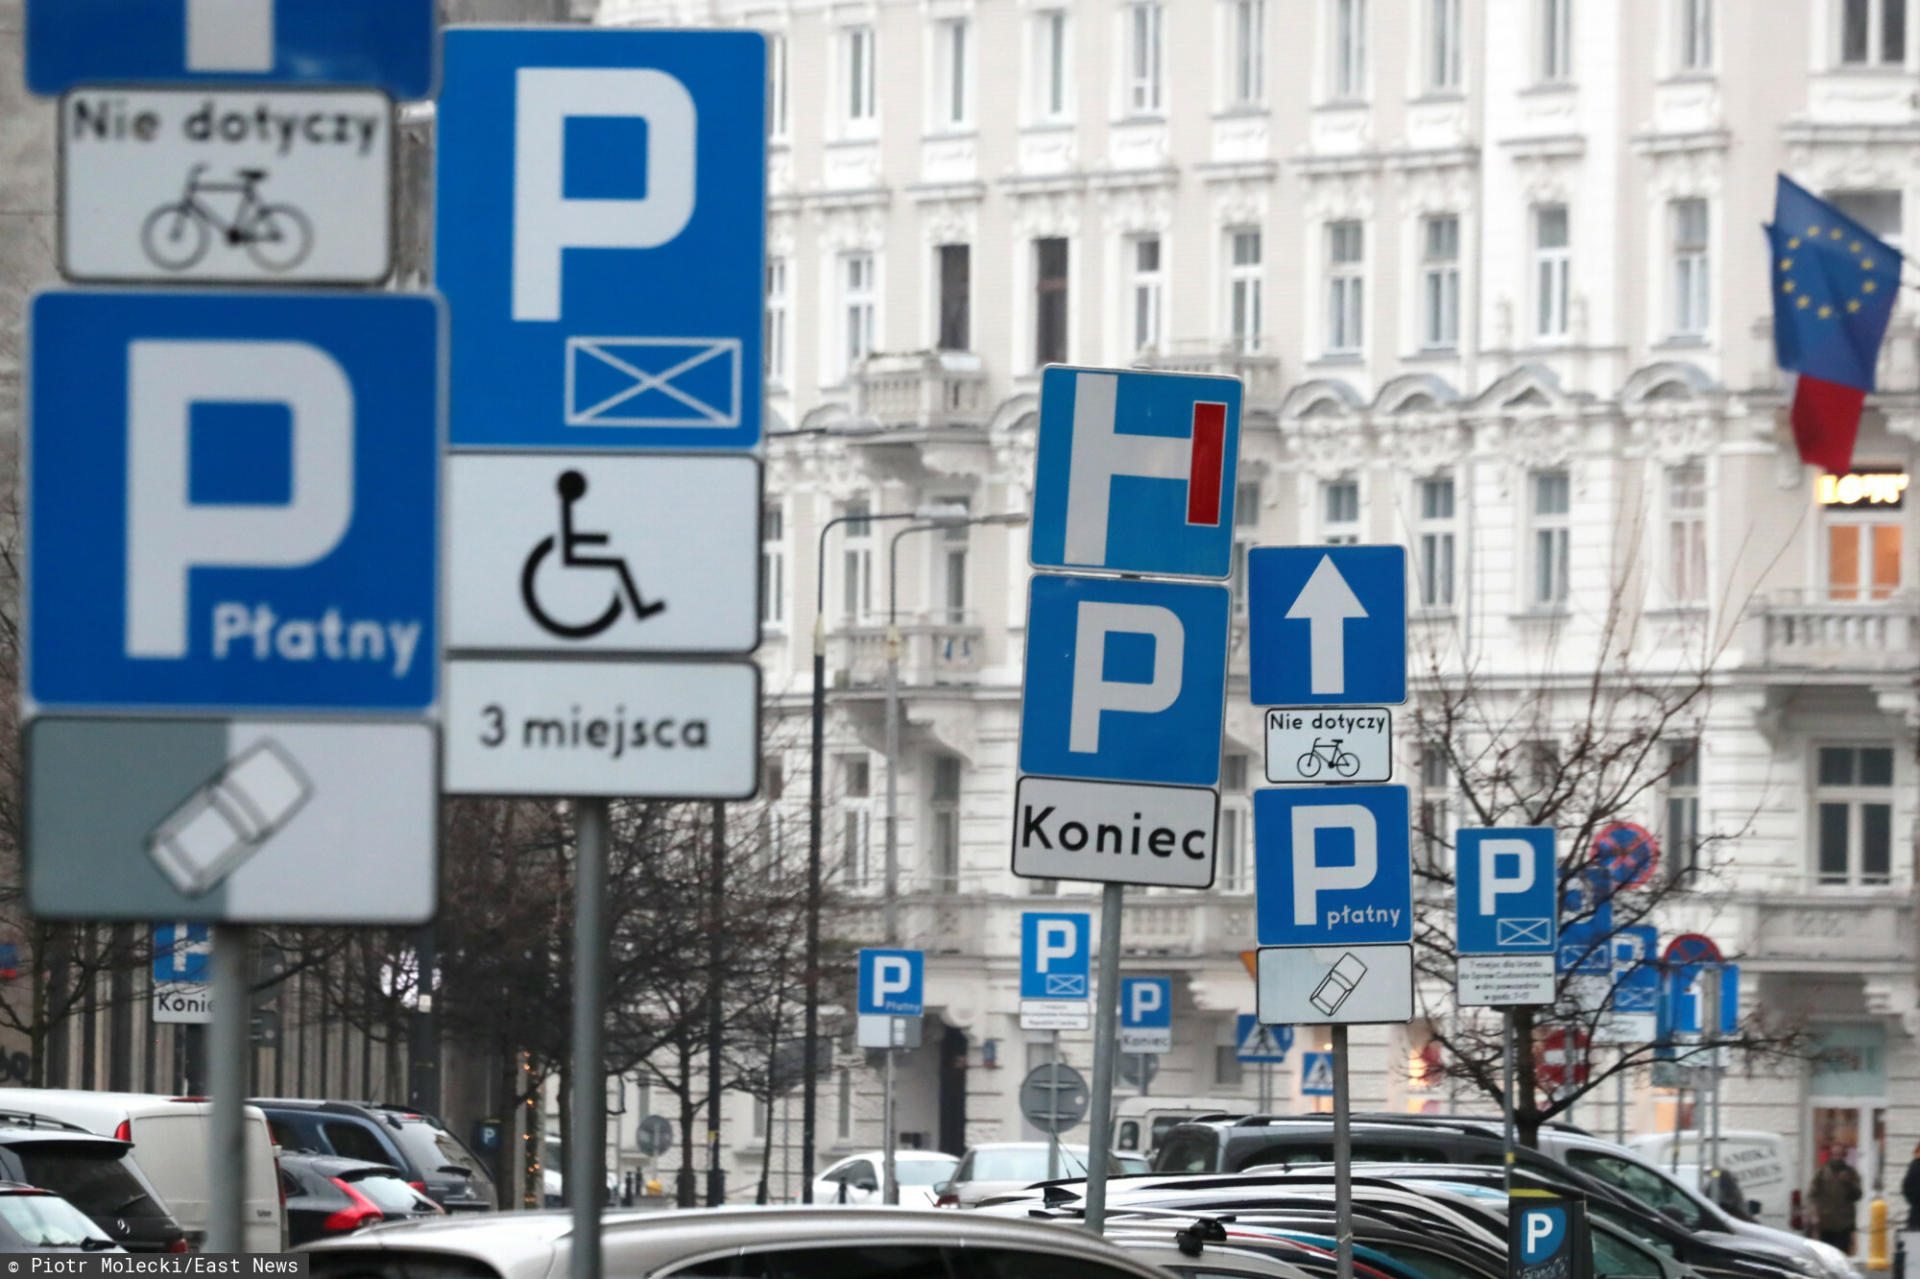 Wojewoda mazowiecki Konstanty Radziwiłł sprzeciwił się rozszerzeniu strefy płatnego parkowania w Warszawie.